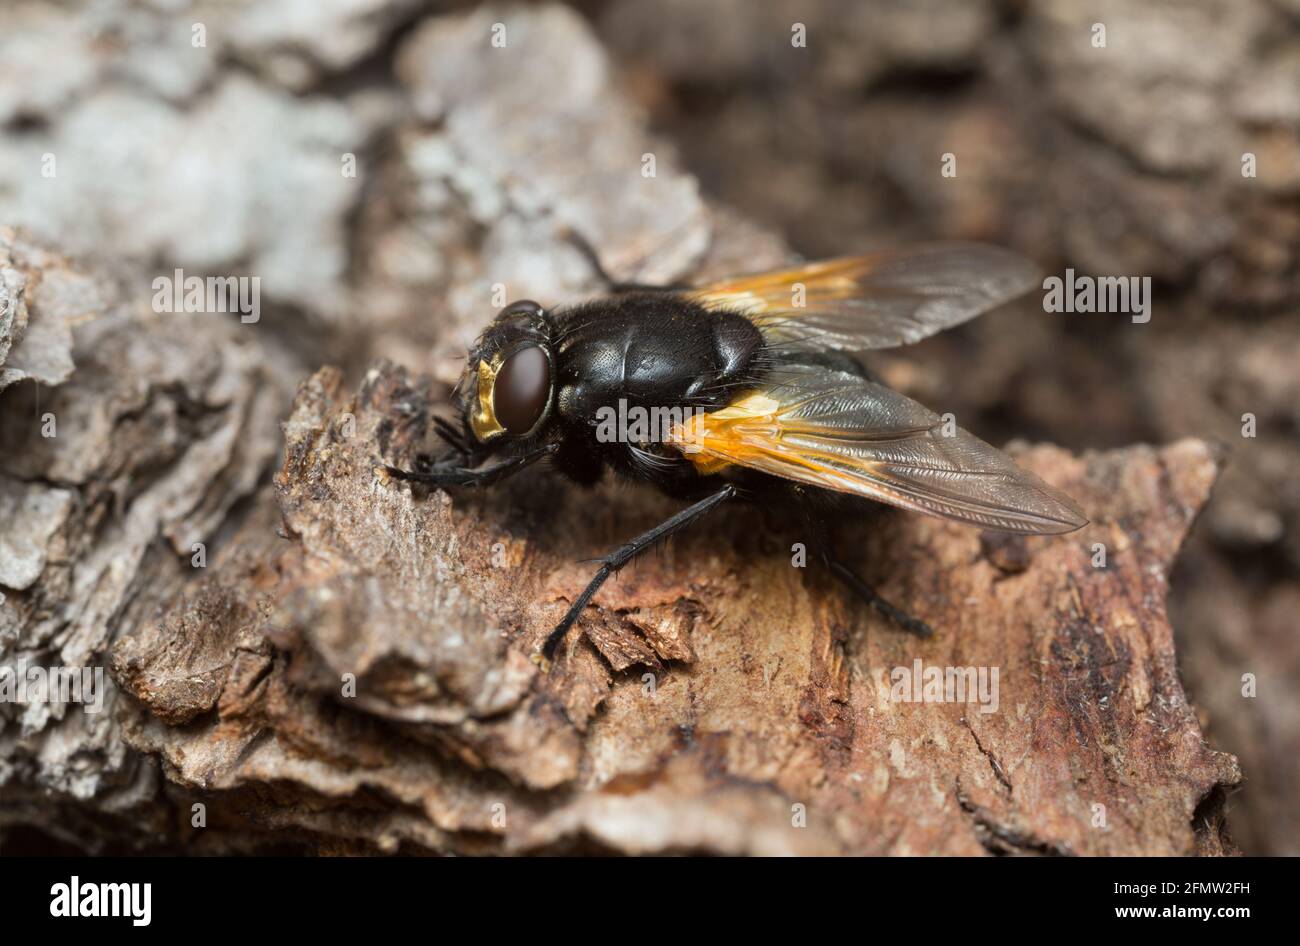 Noon fly, Mesembrina meridiana on oak bark Stock Photo